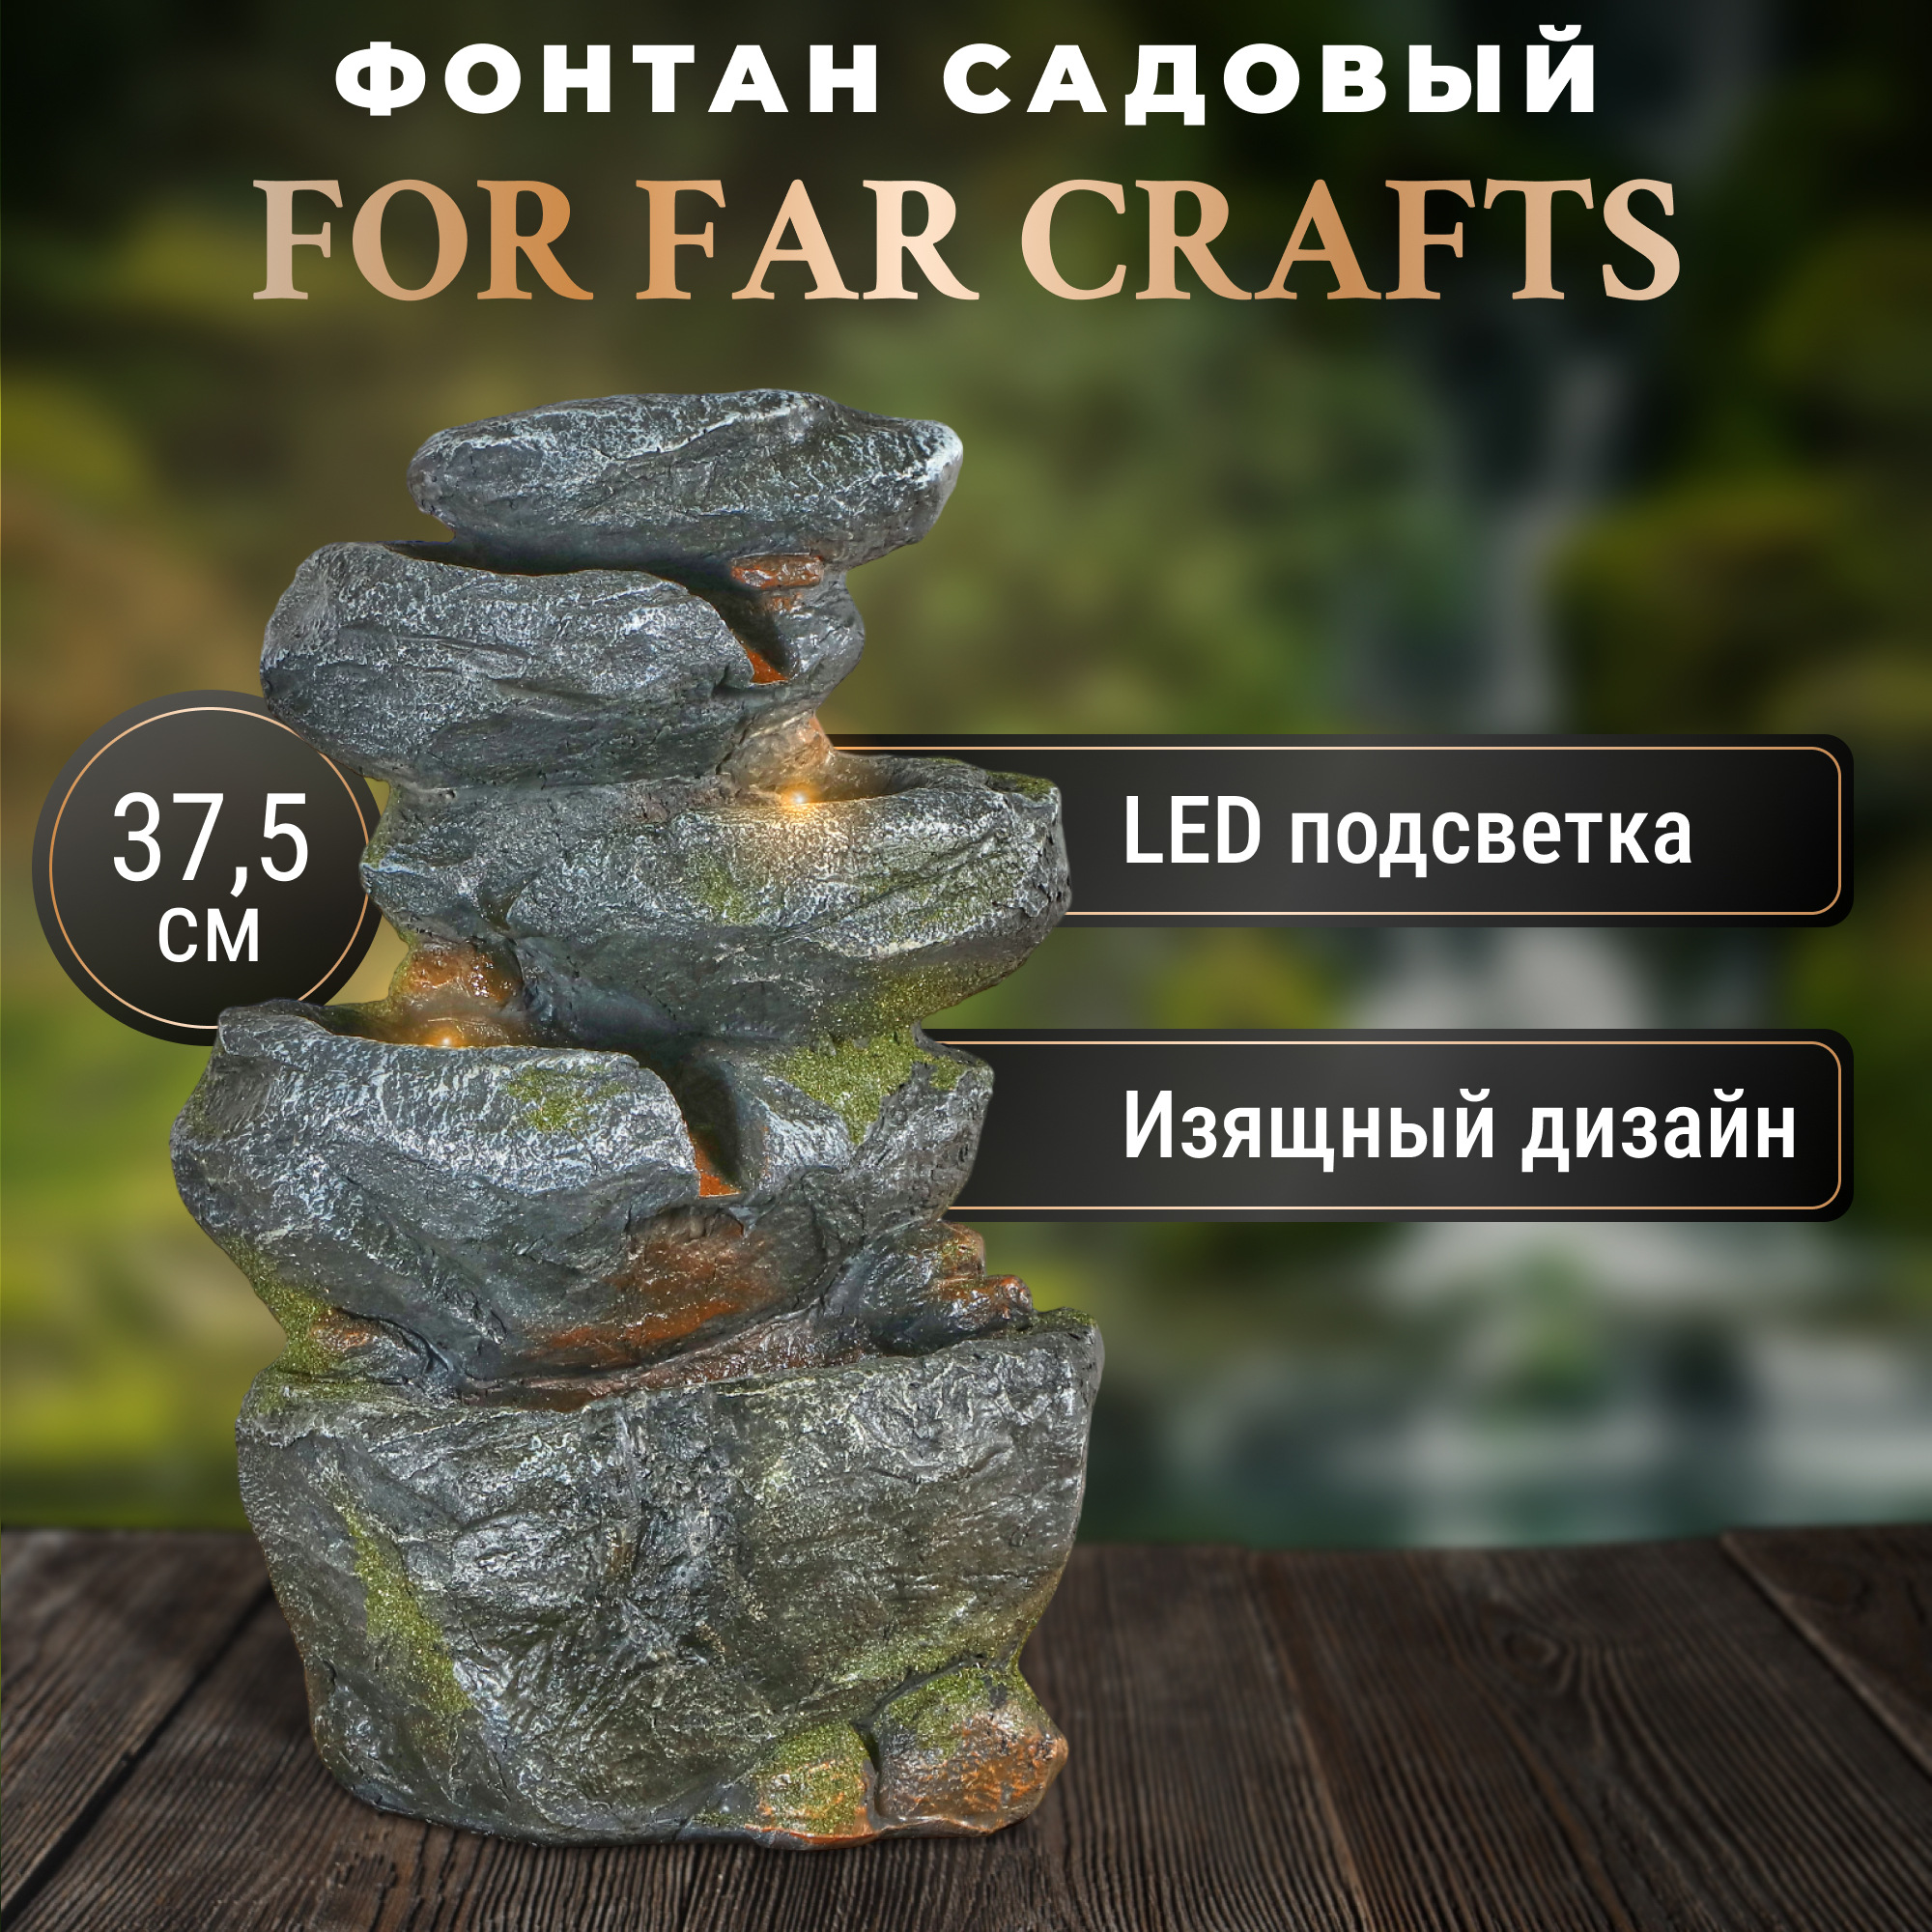 Фонтан For far crafts водопад малый 25x19x37.5cm фонтан for far crafts каменная пирамидка 43x39x71cm